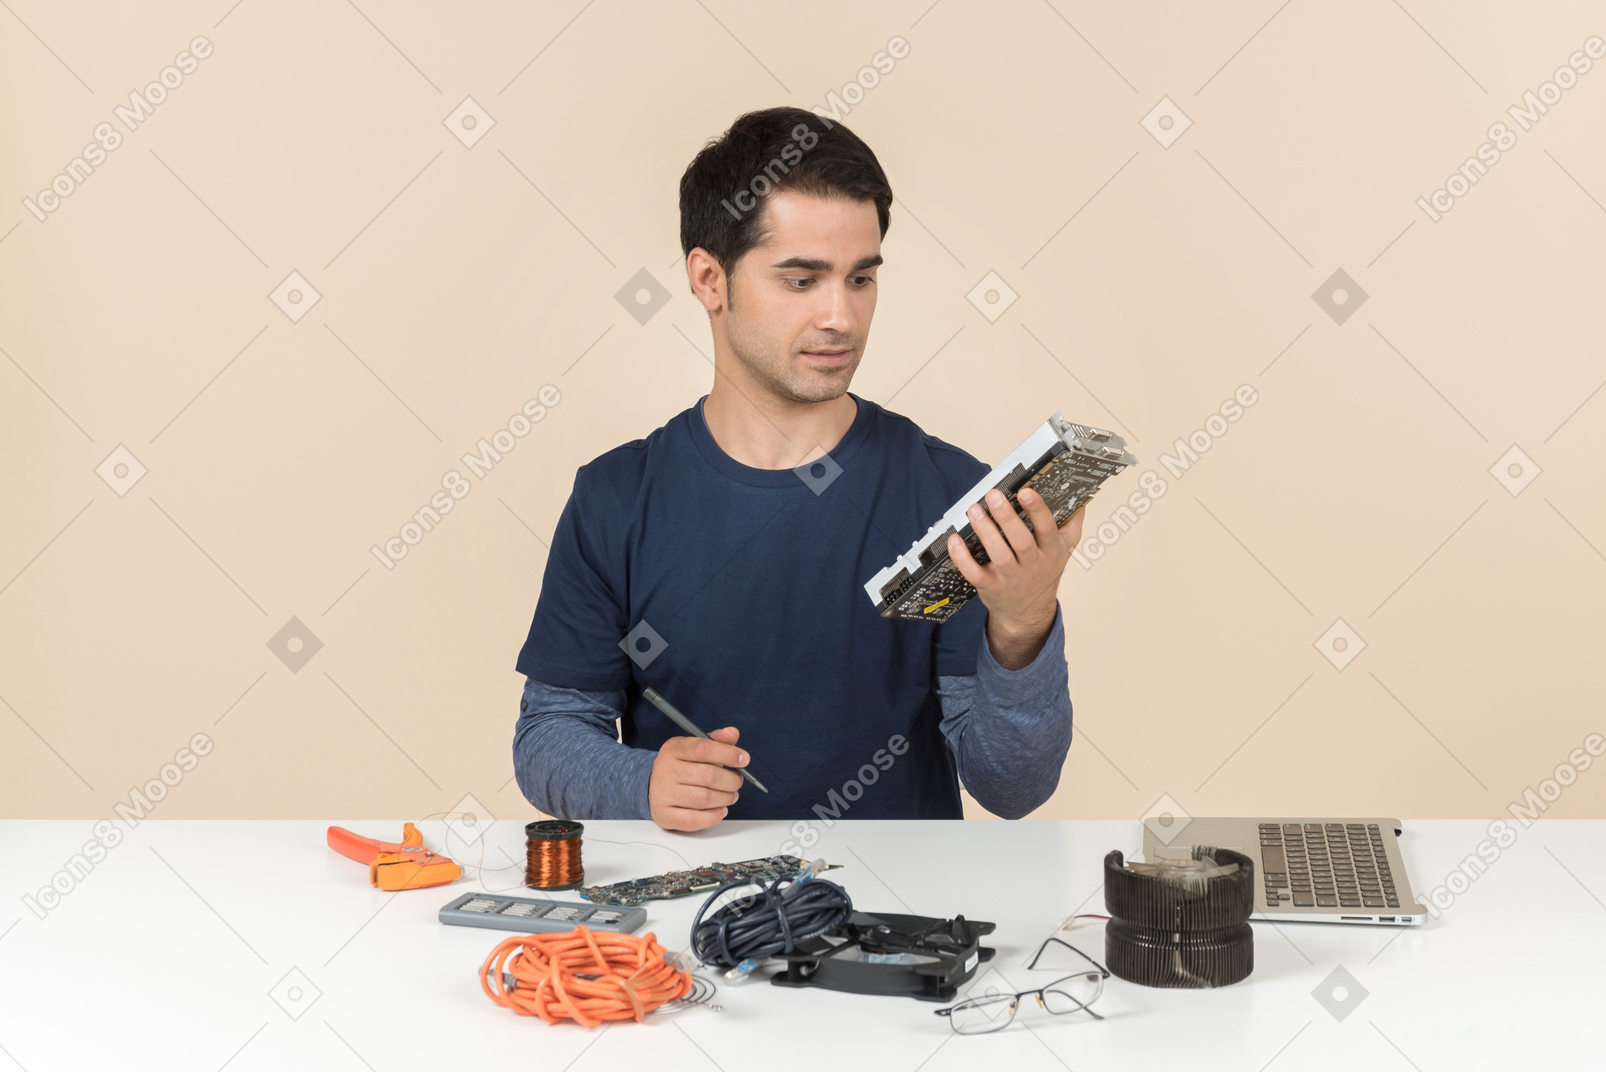 Un joven en ropa casual azul trabajando con detalles de la computadora